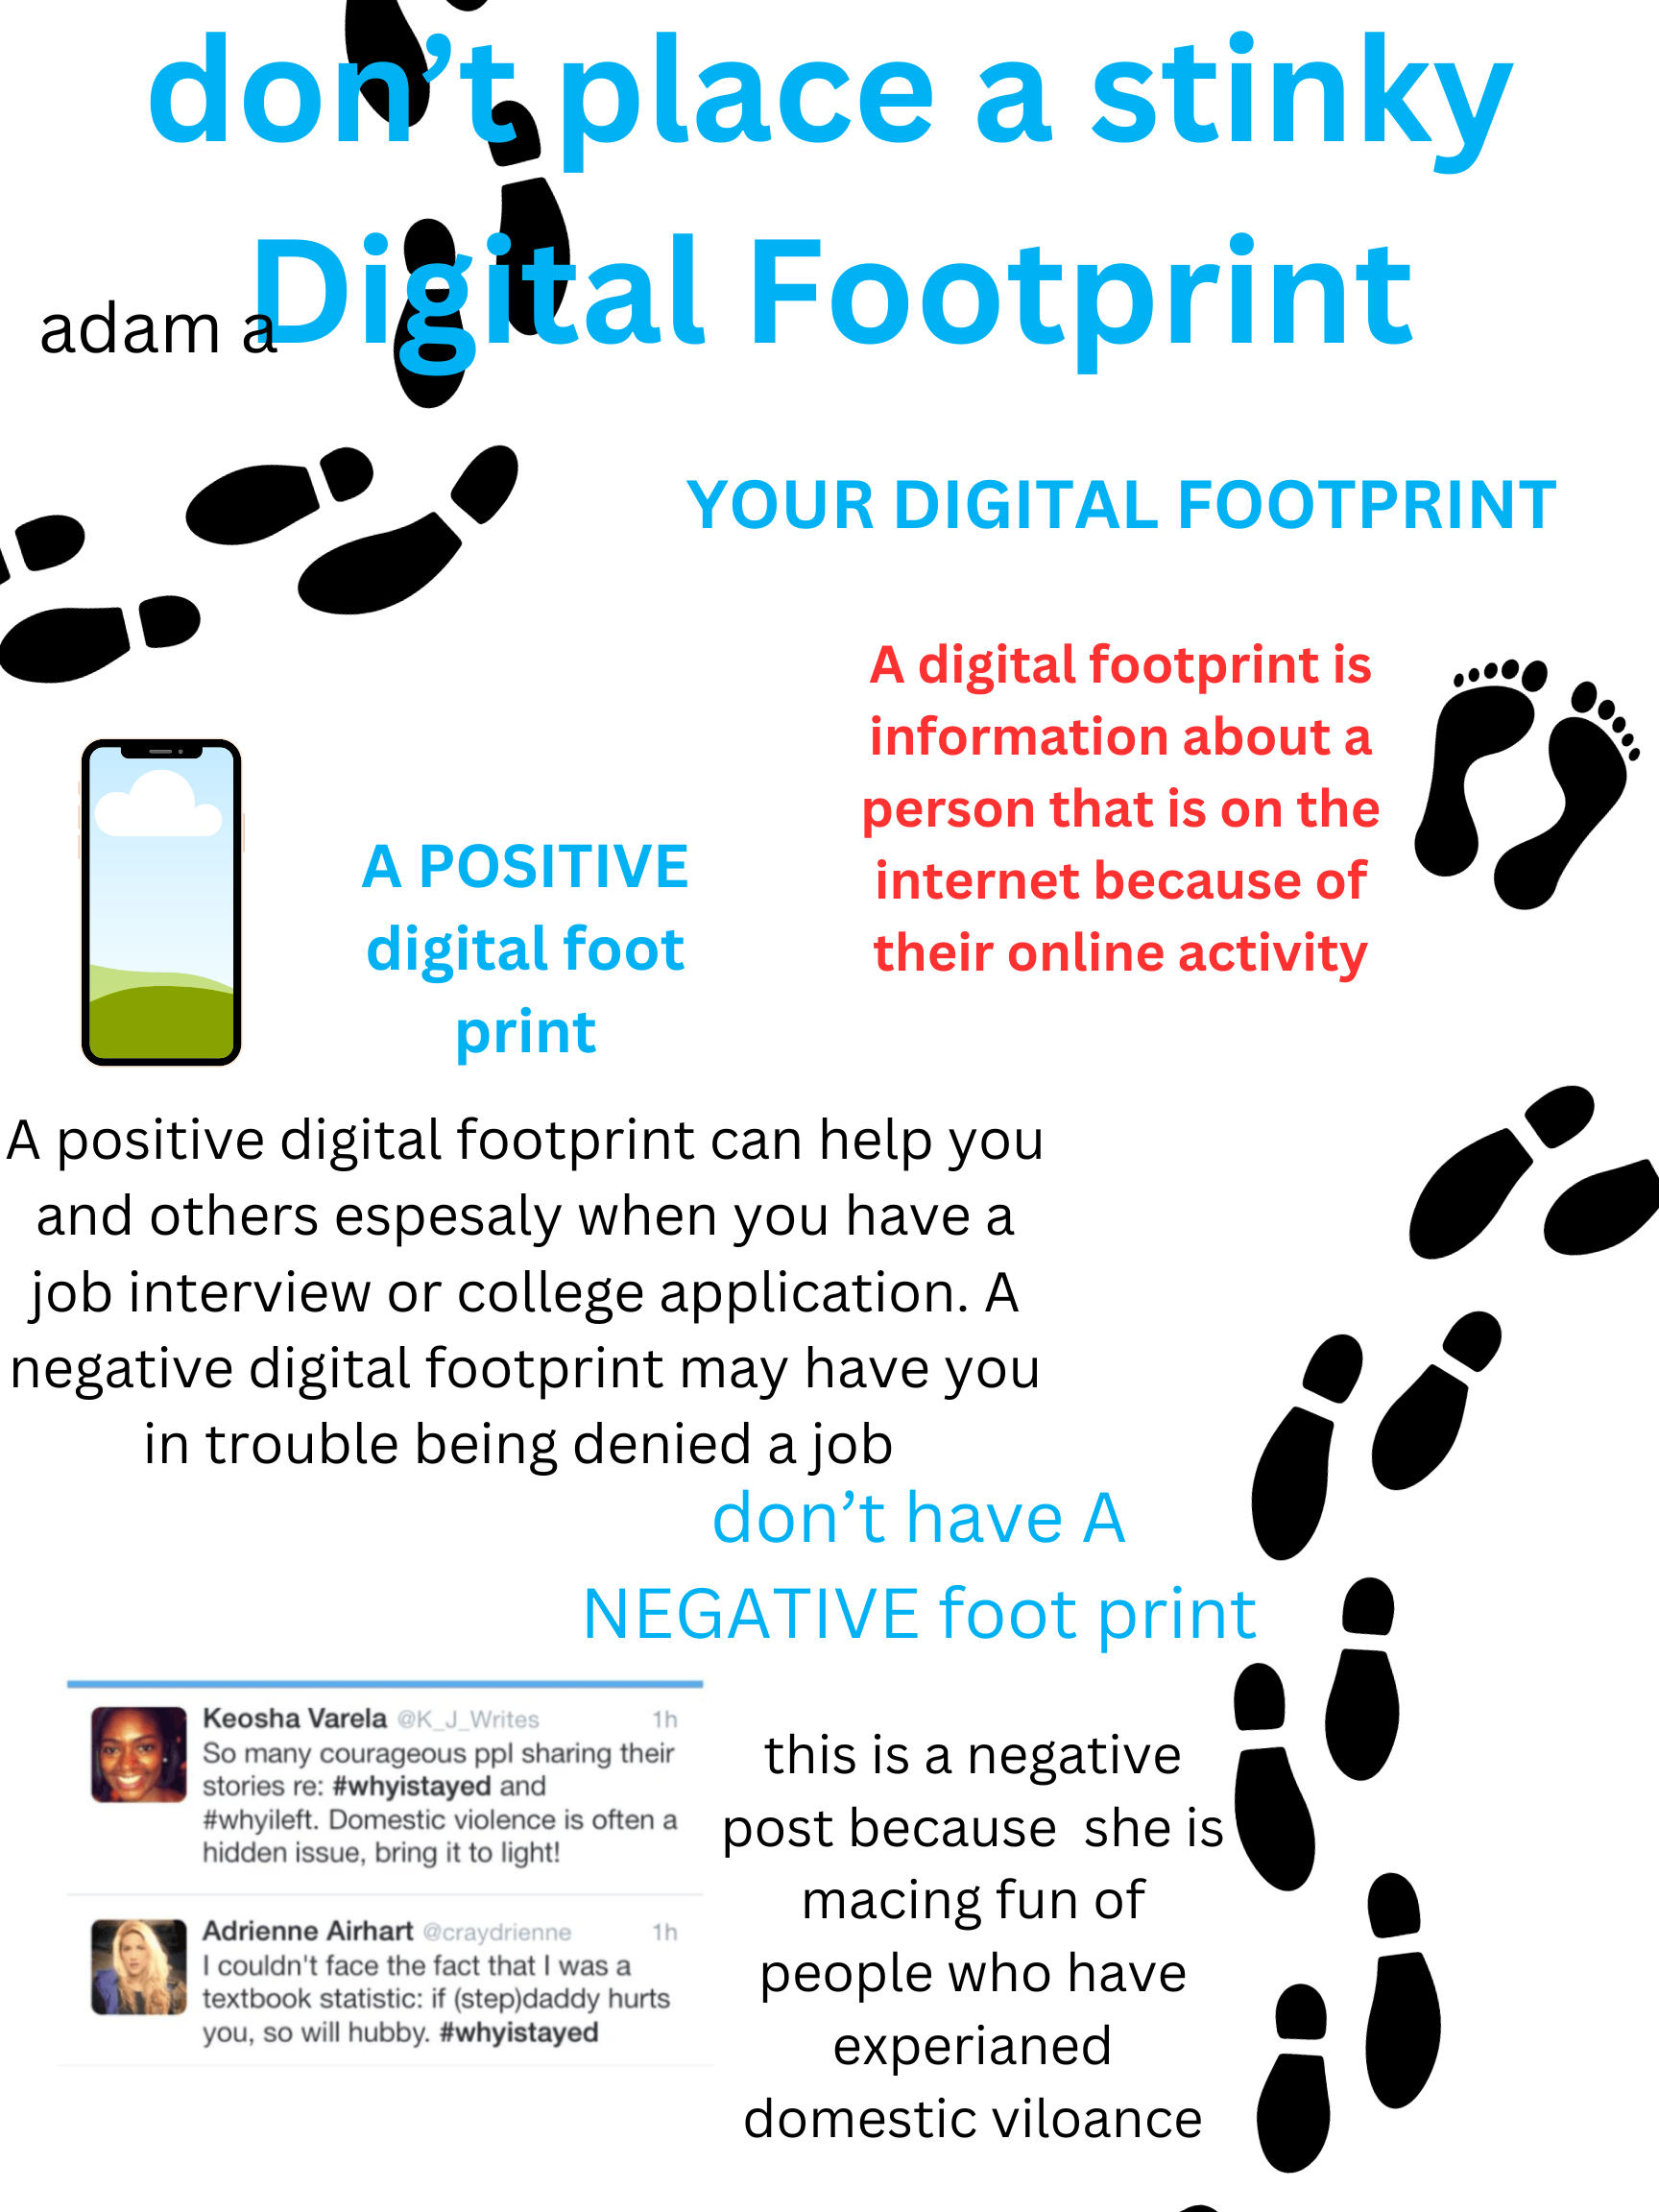 Digital Footprint Poster - Adam A